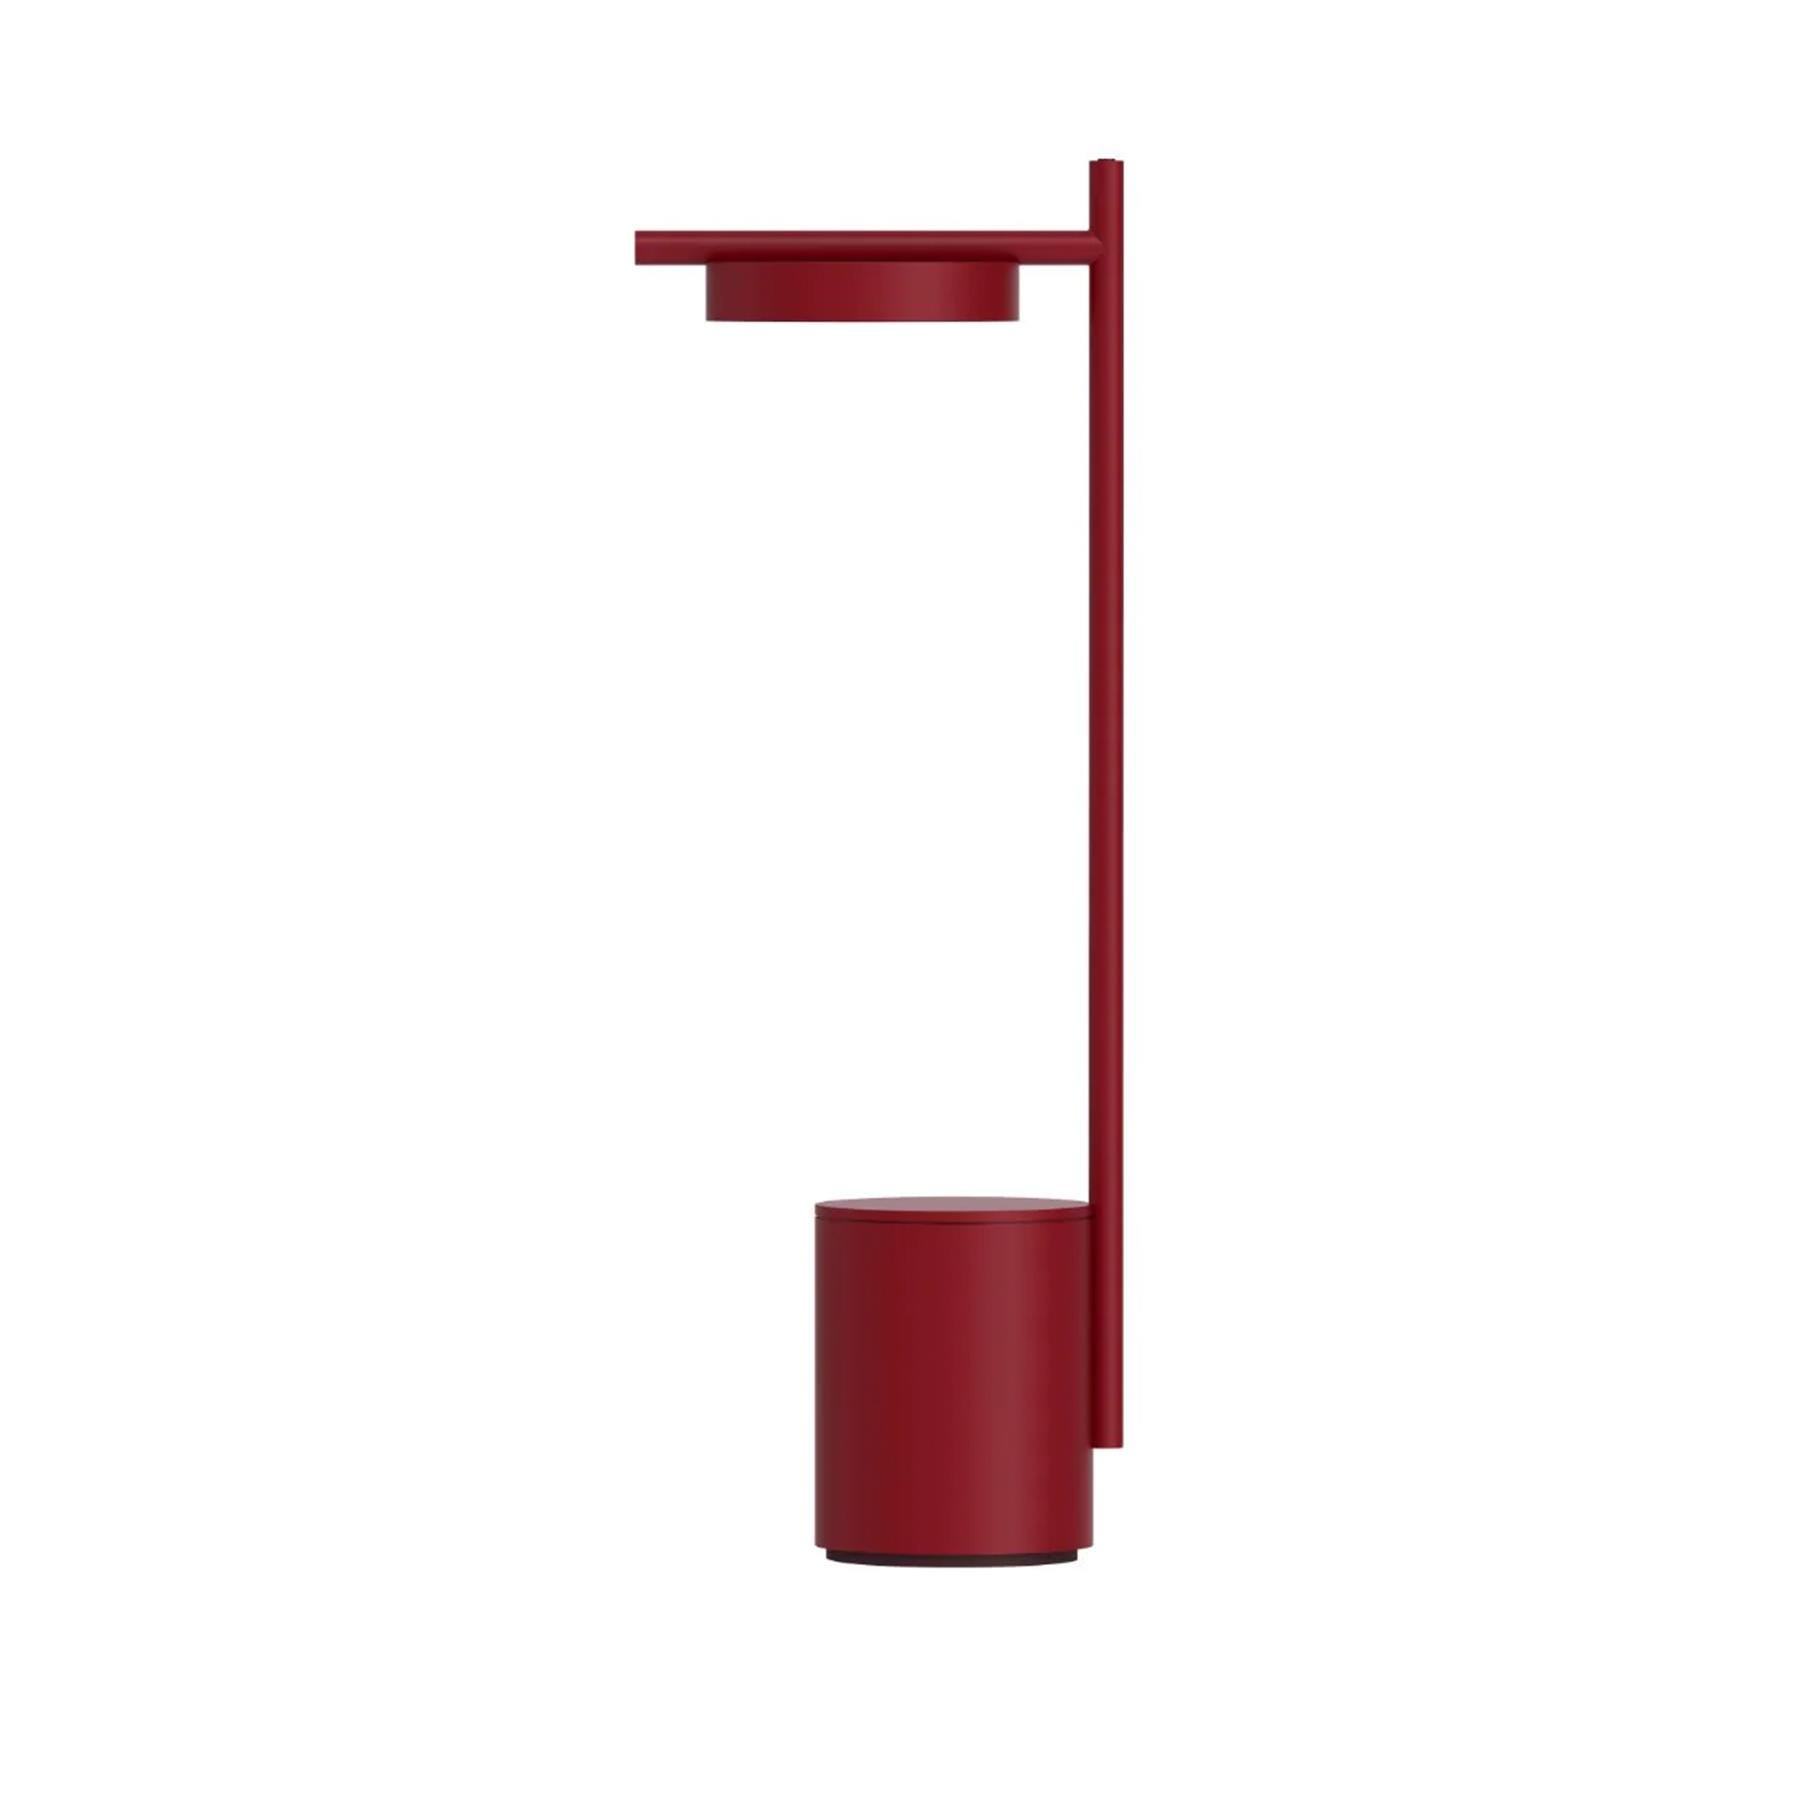 Grupa Igram Portable Table Lamp I Shape Red Designer Lighting From Holloways Of Ludlow